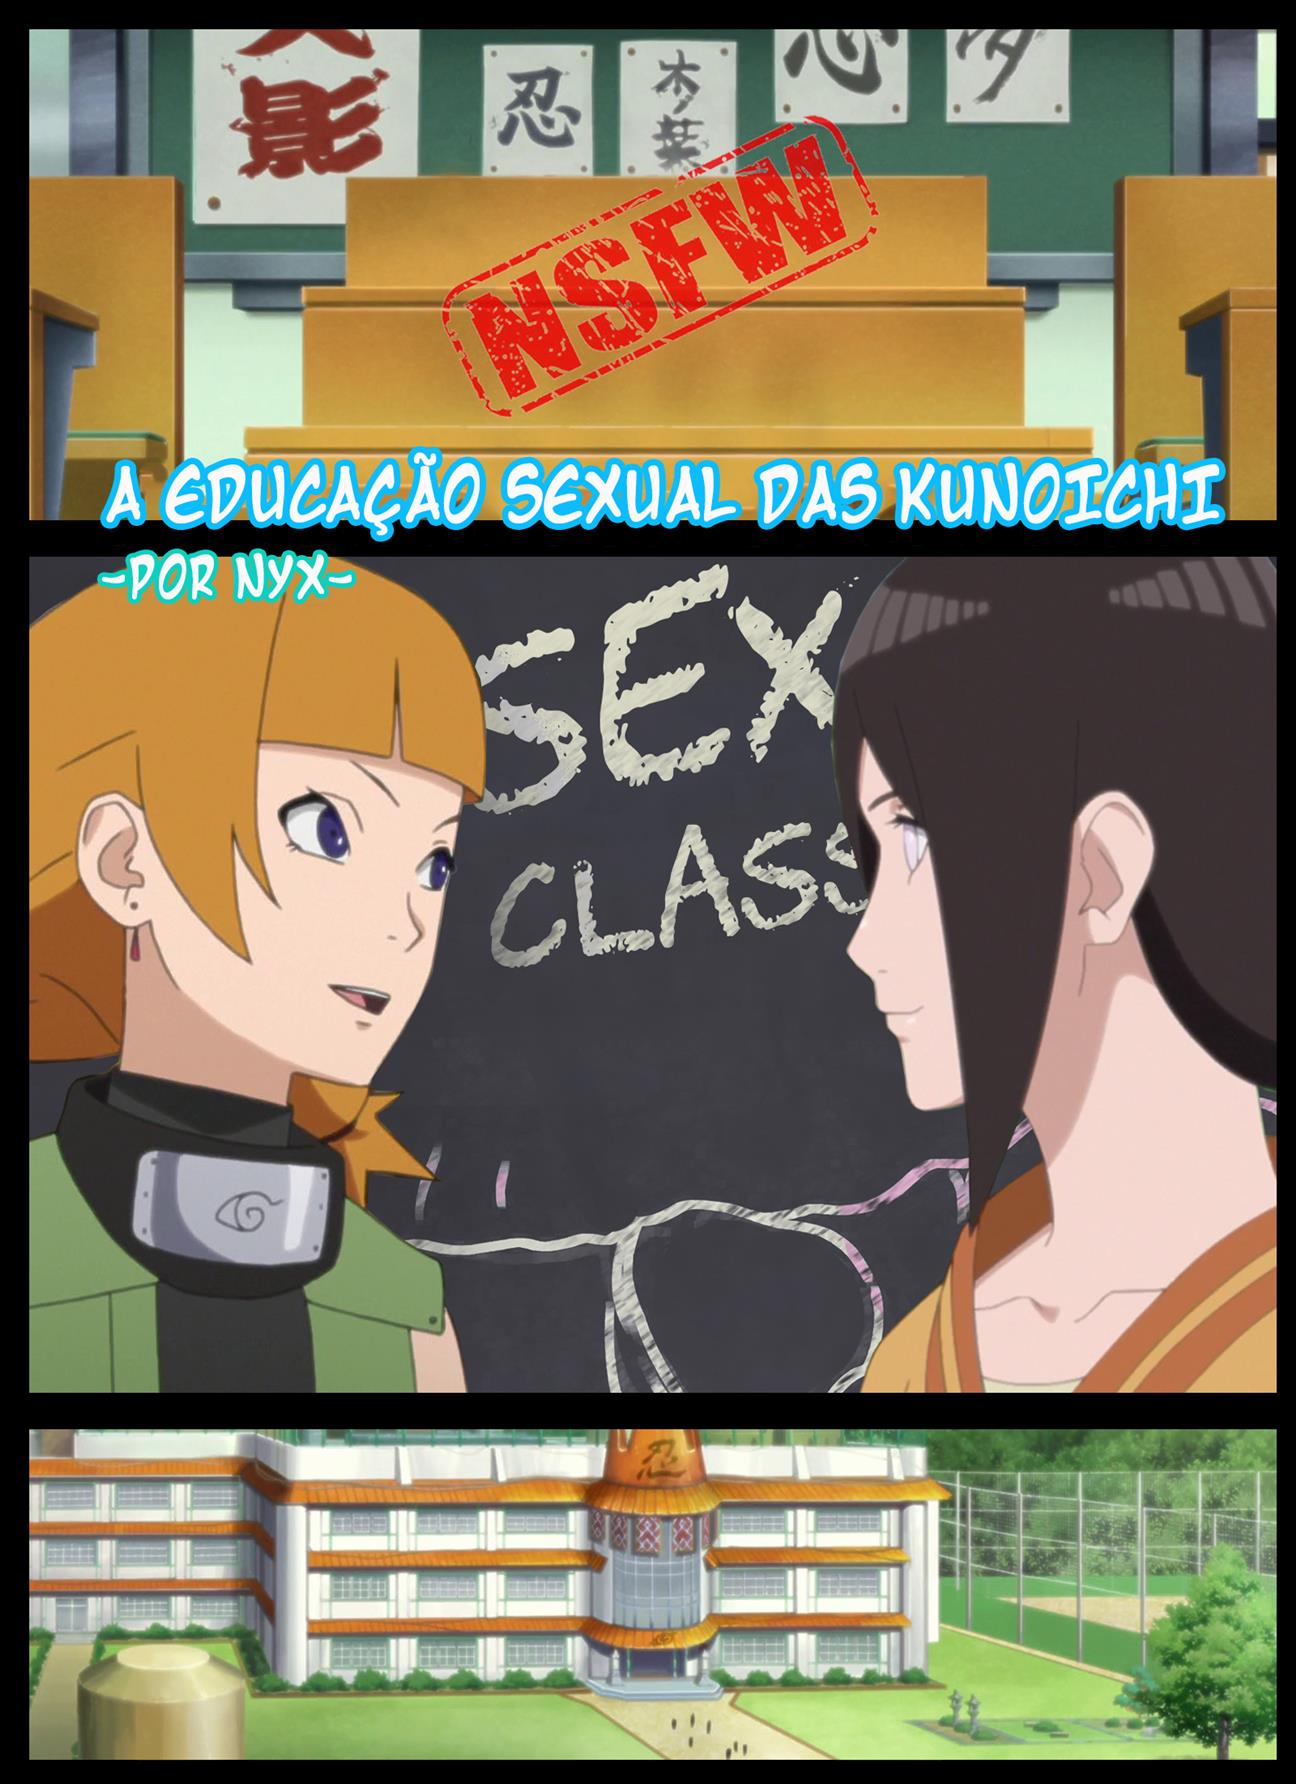 Educação sexual das kunoichis - Hentai Yabu